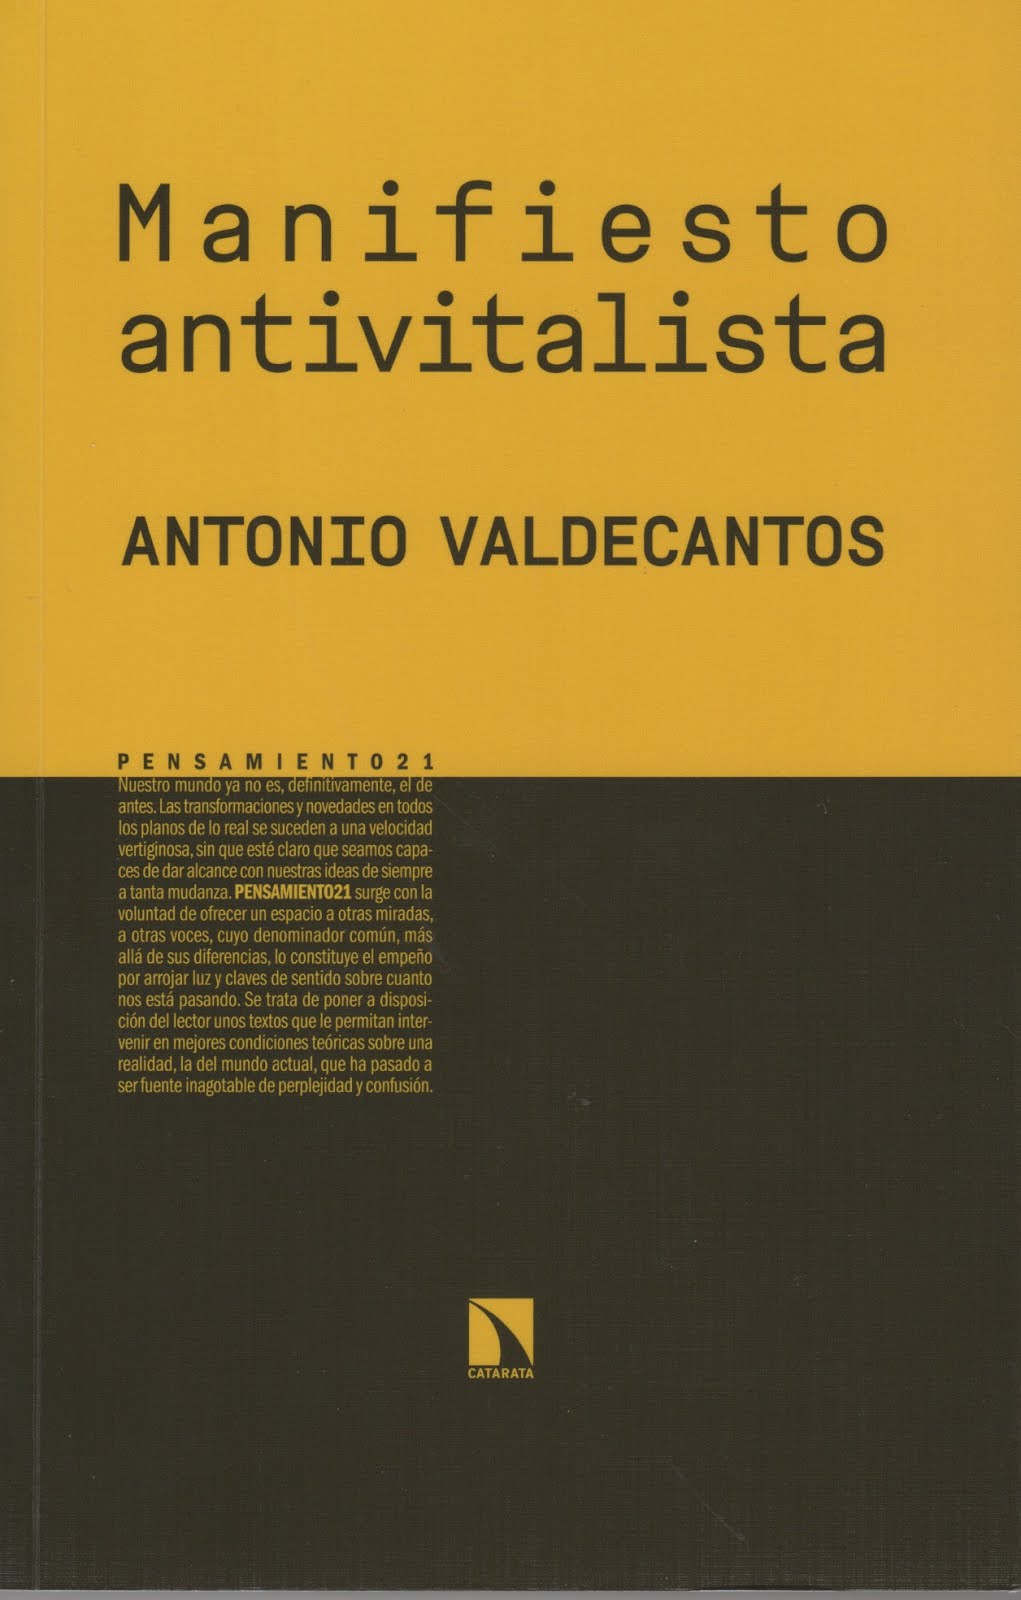 Antonio Valdecantos (Manifiesto antivitalista)